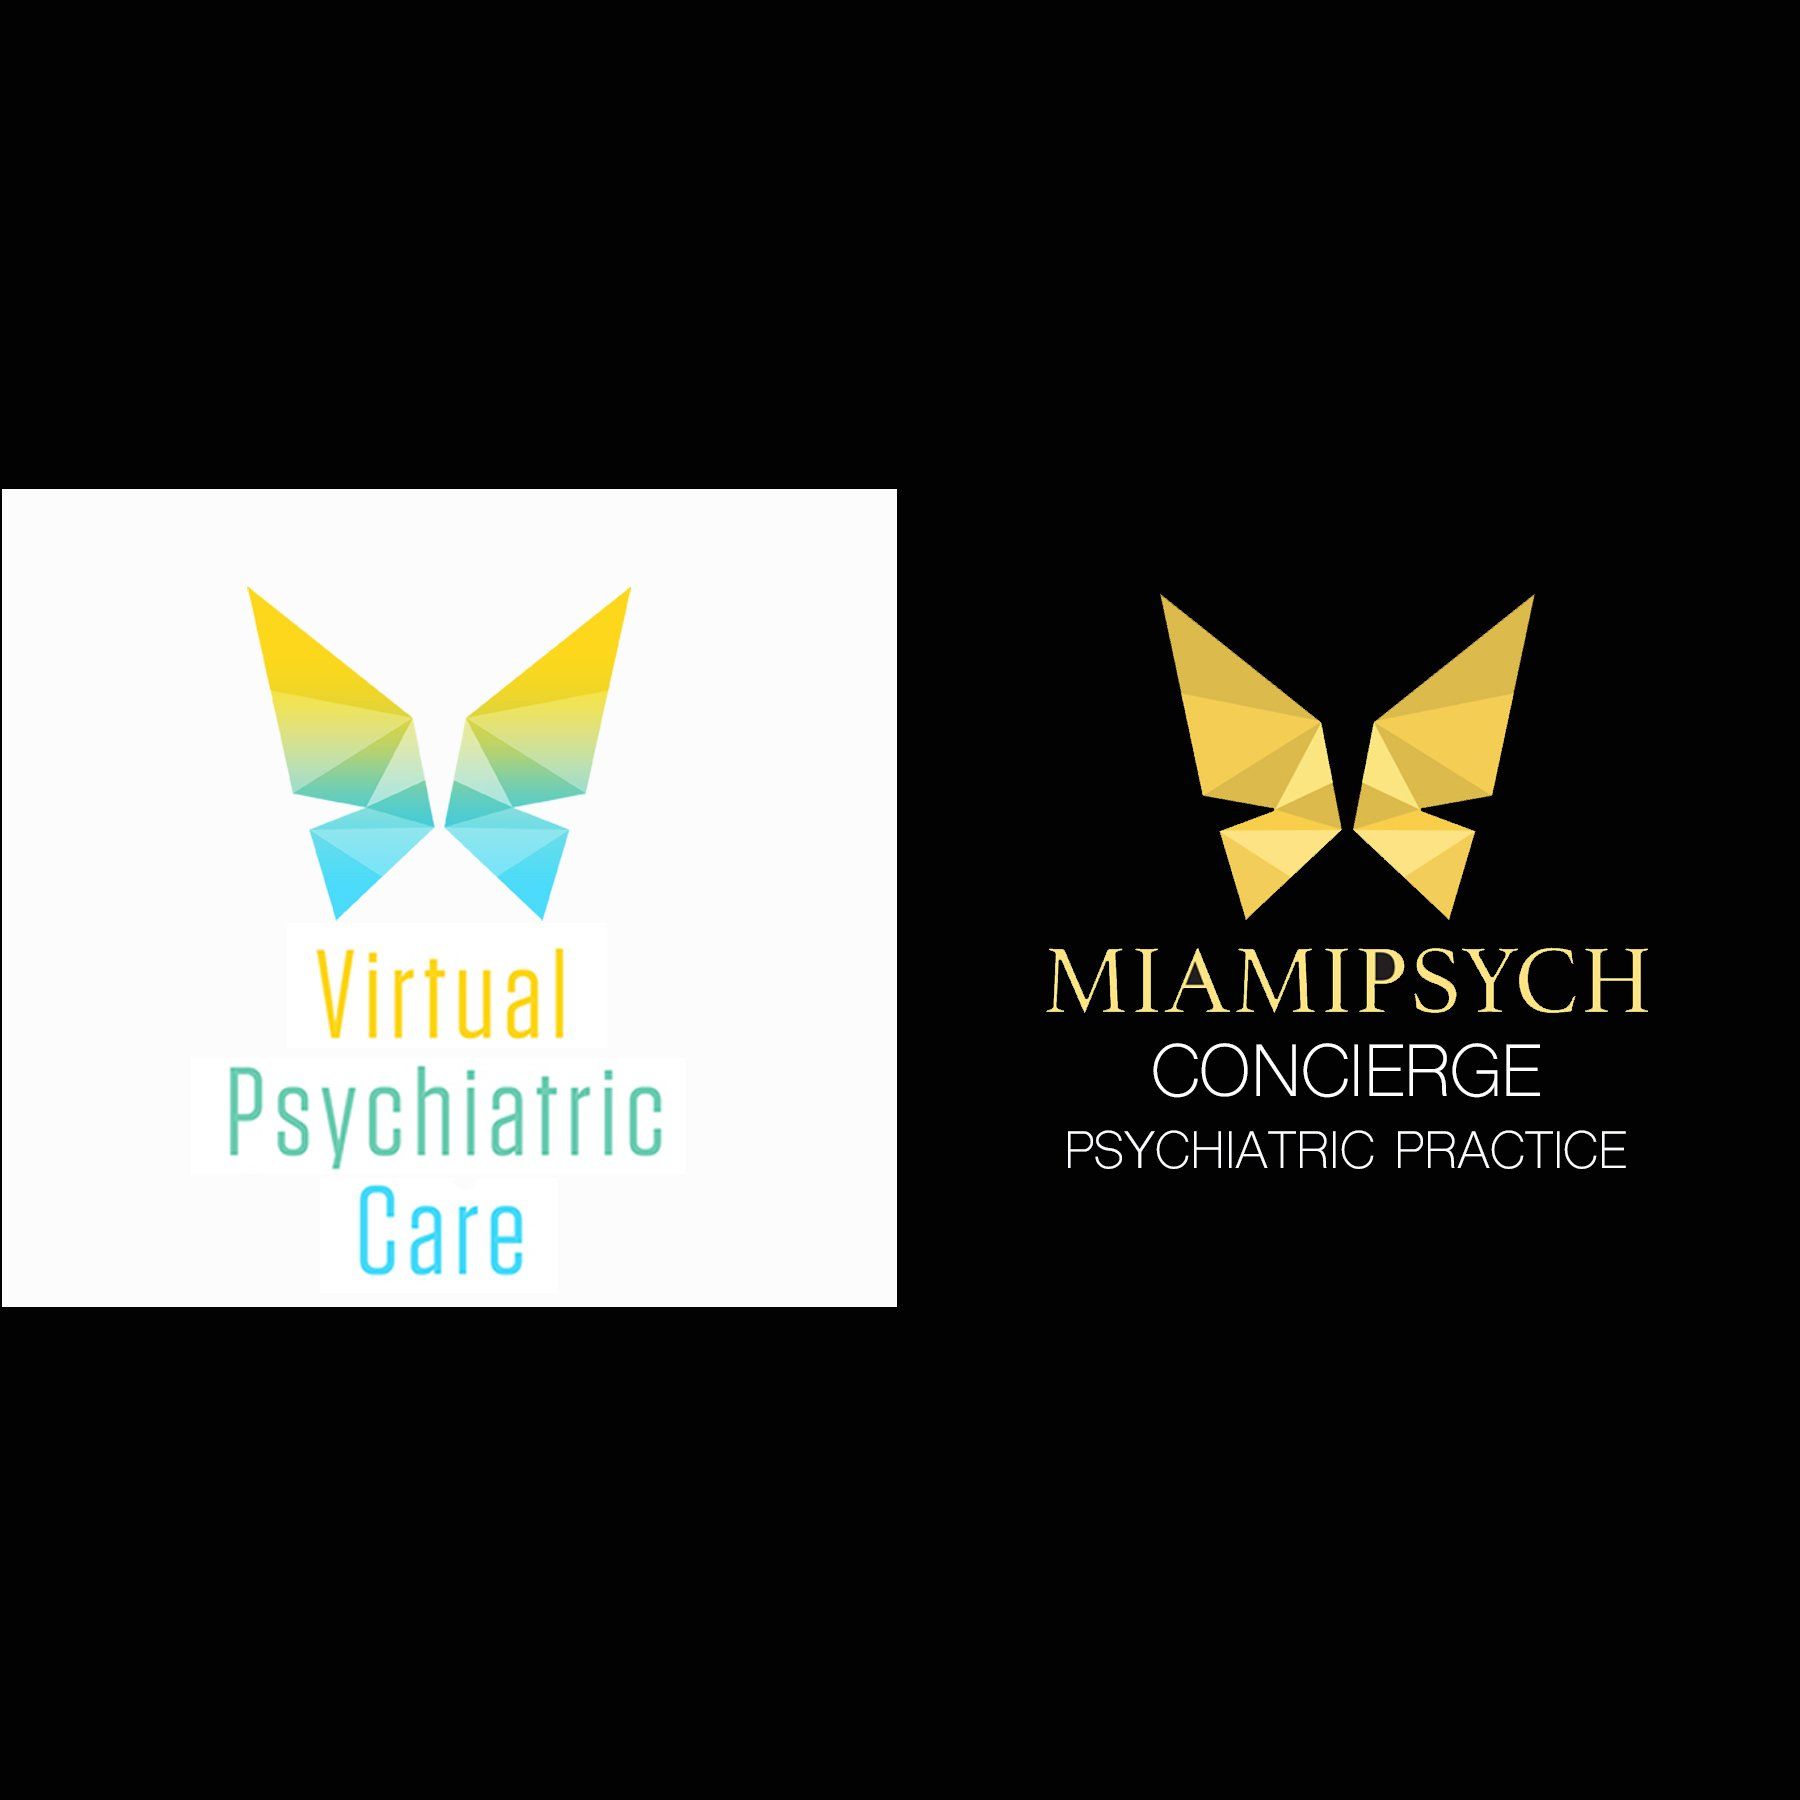 MiamiPsych Concierge Logo